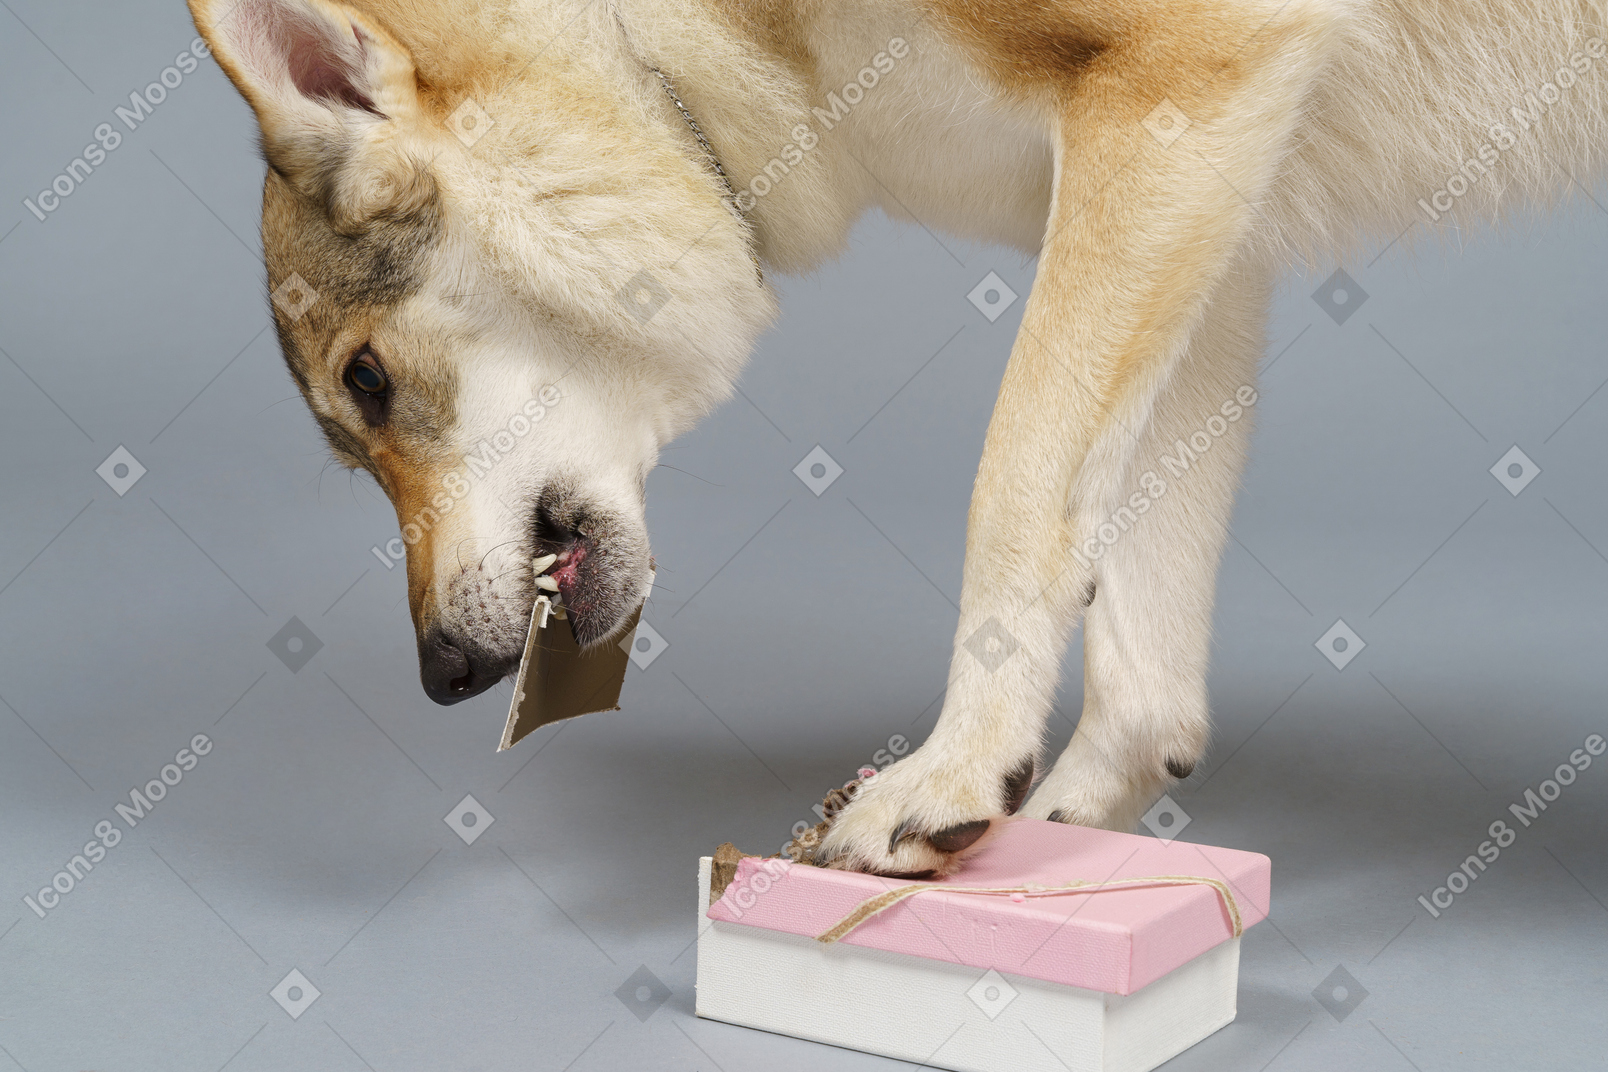 寻找一个盒子里的东西的狼般狗的特写镜头